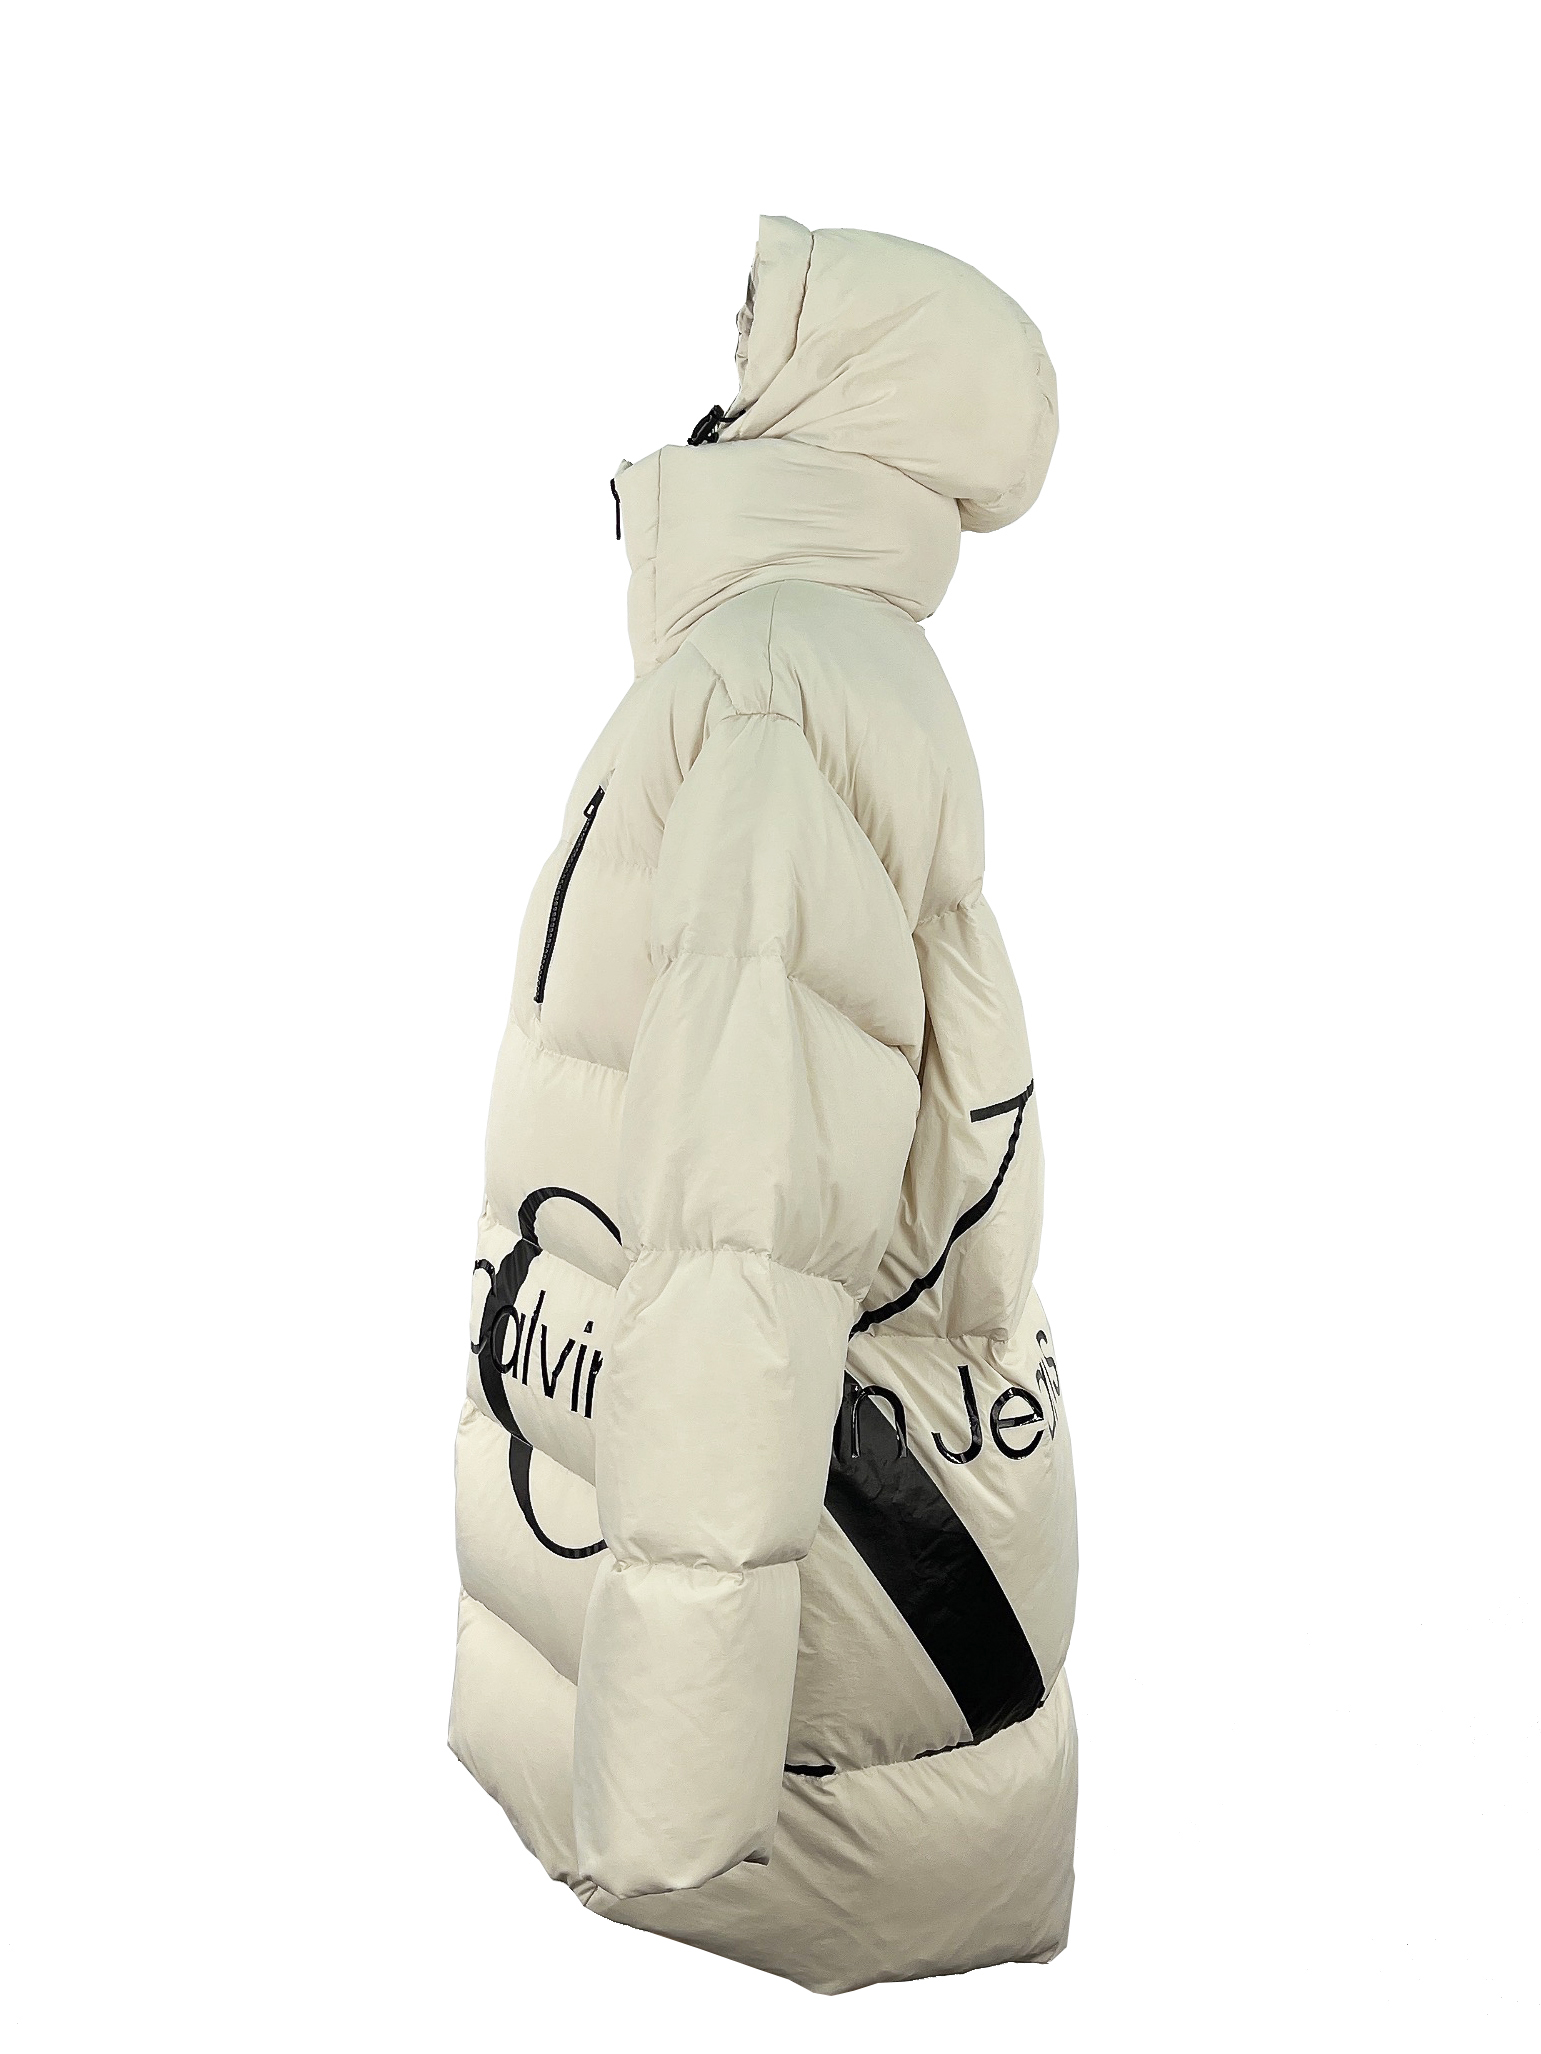 5.padded jacket (2)